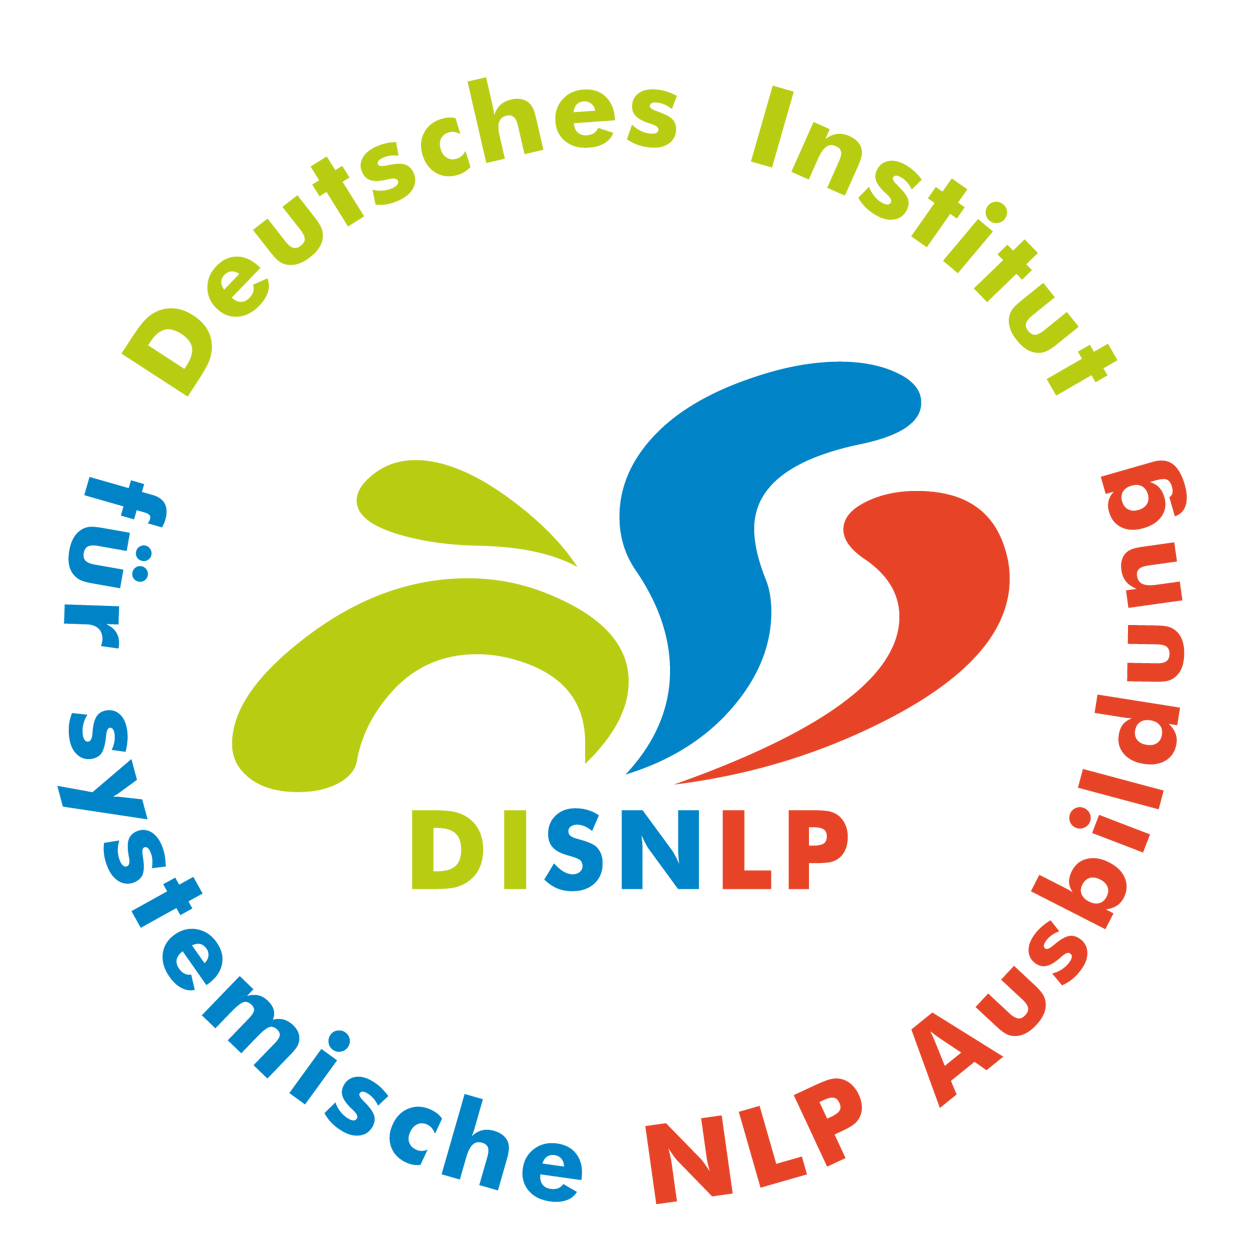 Seminar Selbstbewusstsein, Selbstvertrauen, Selbstwert, Selbstsicherheit stärken Ludwigshafen Am Rhein Stadt mit NLP Coaching Kurs für mehr Selbstbewusstsein